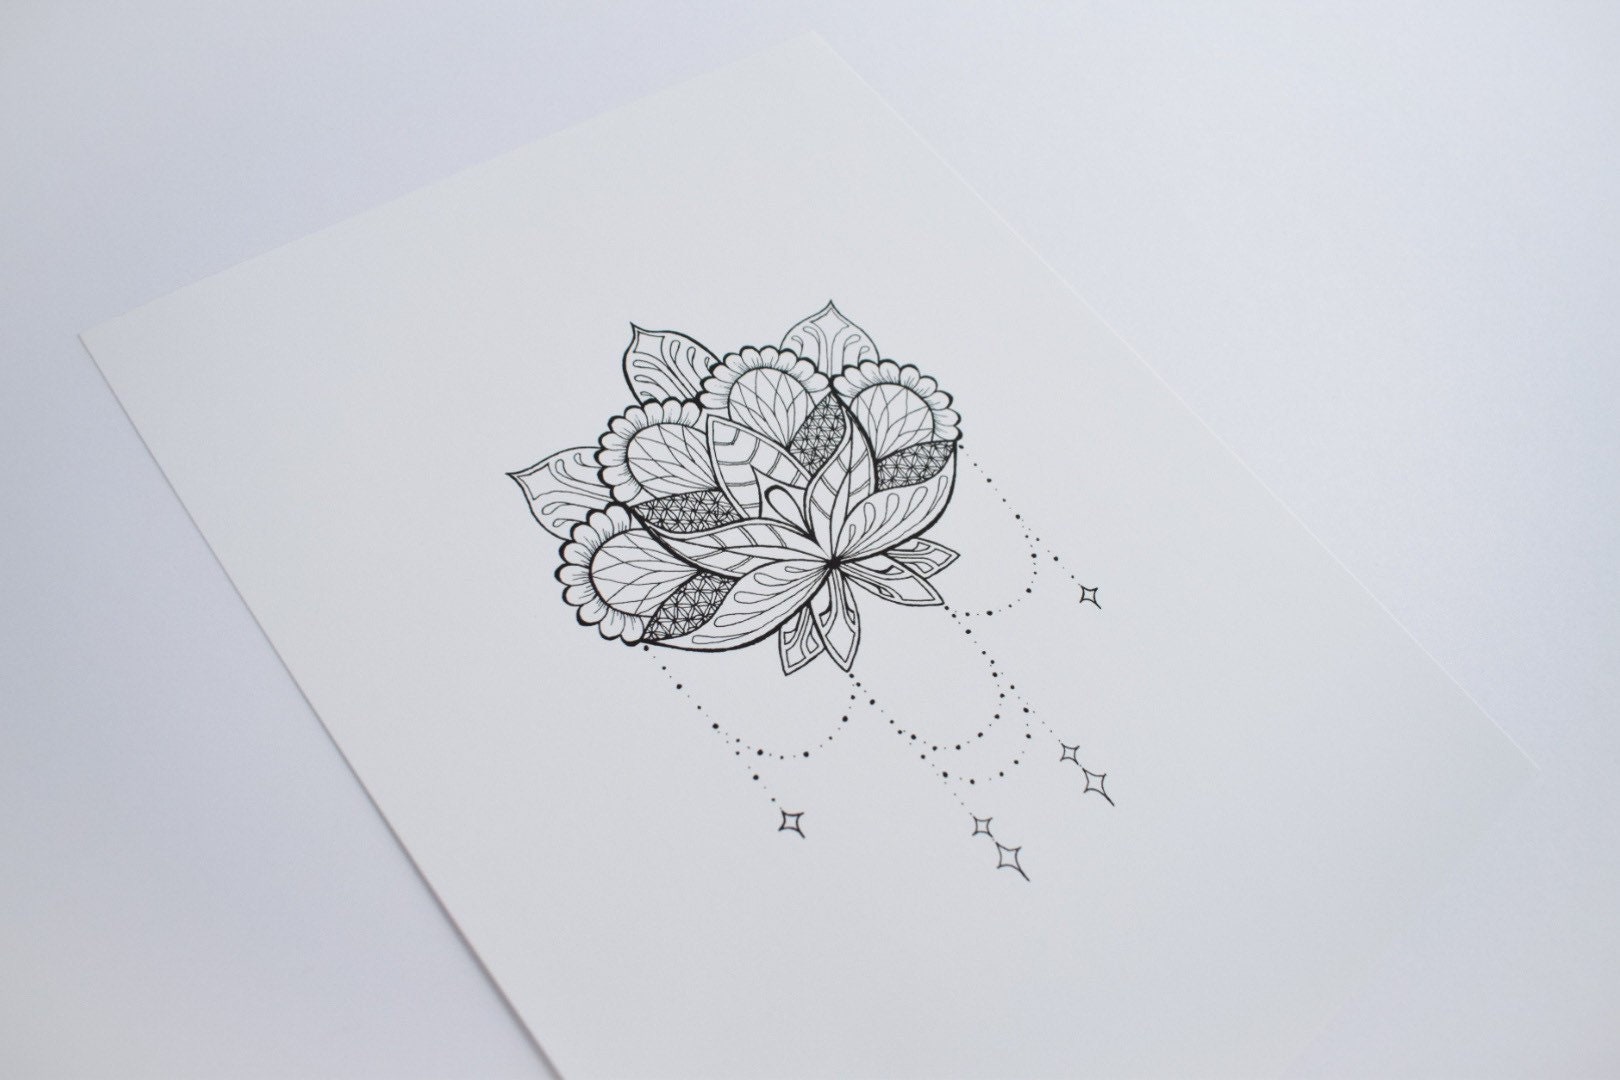 Flor · loto · tatuaje · magia · símbolo · impresión - ilustración vectorial  © barsrsind (#8474431)